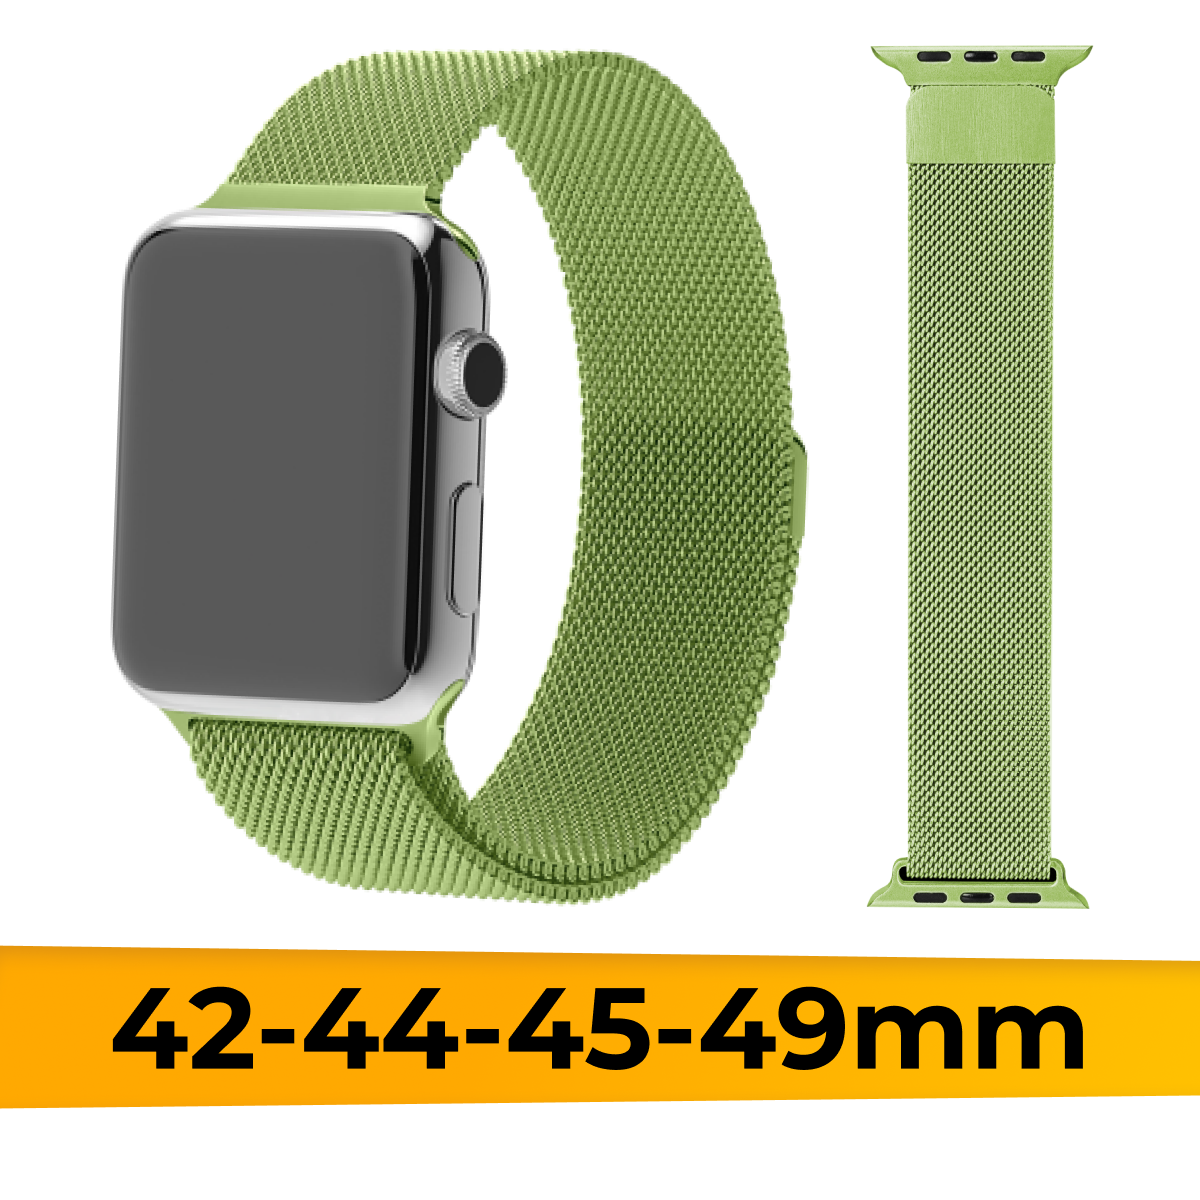 Металлический ремешок для Apple Watch 1-9, SE, Ultra, 42-44-45-49 mm миланская петля / Браслет на магните для Эпл Вотч 1-9, СE, Ультра / Салатовый